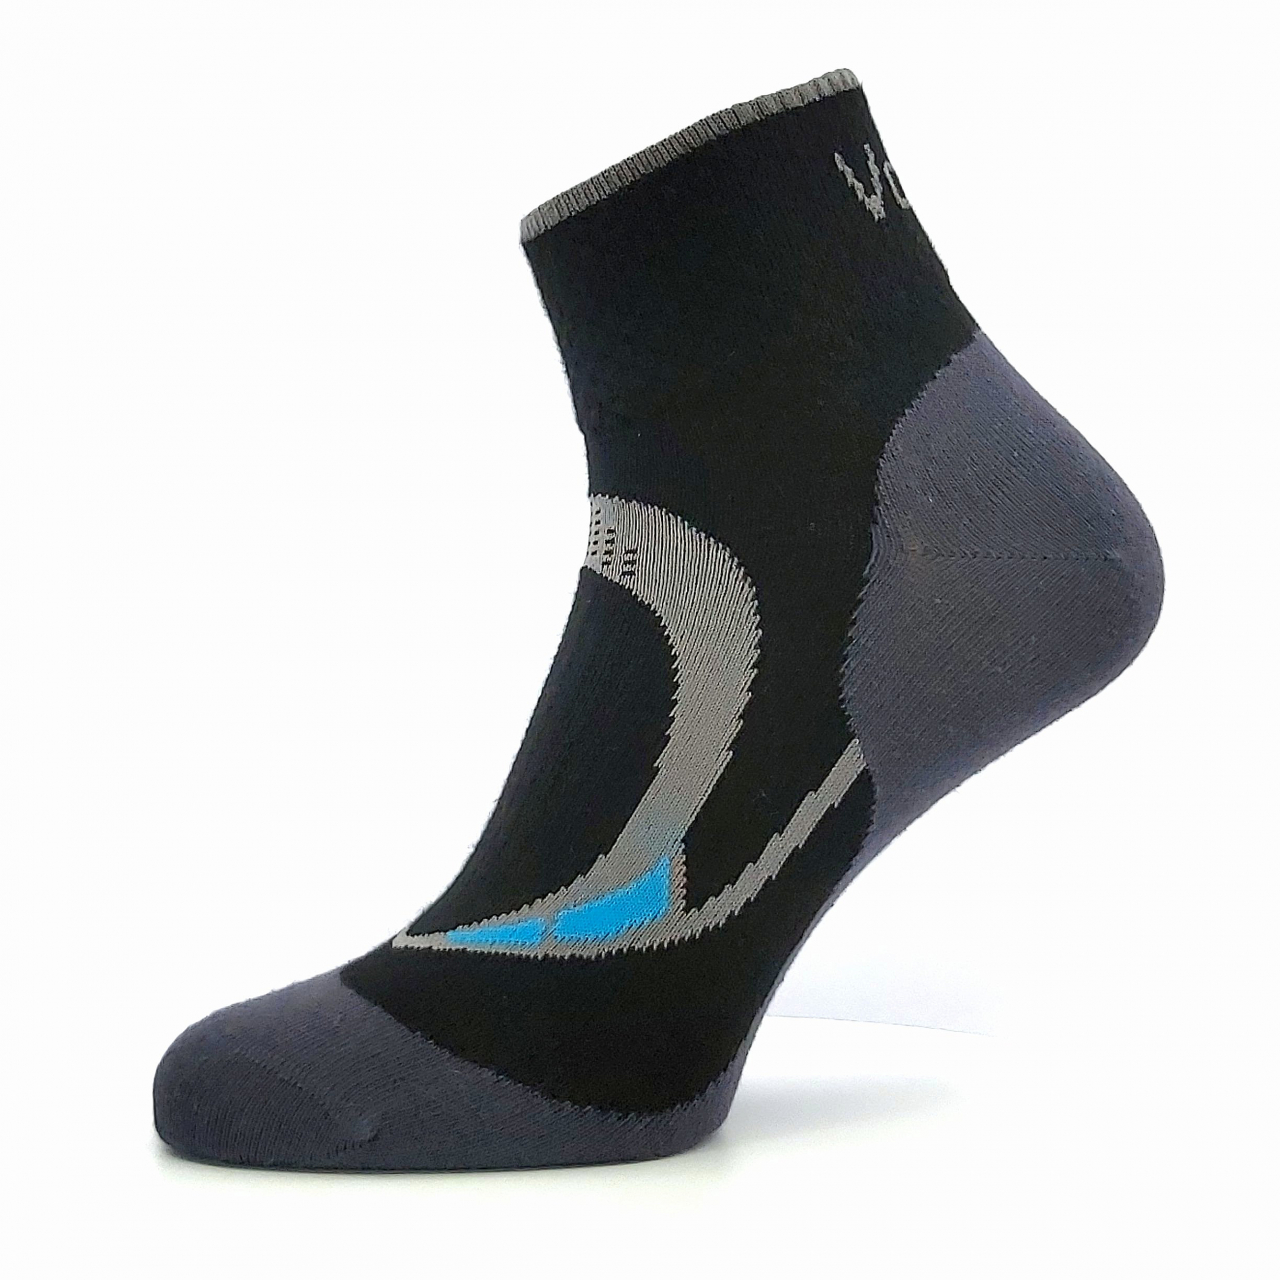 Ponožky dámské sportovní Voxx Lira - černé, 35-38